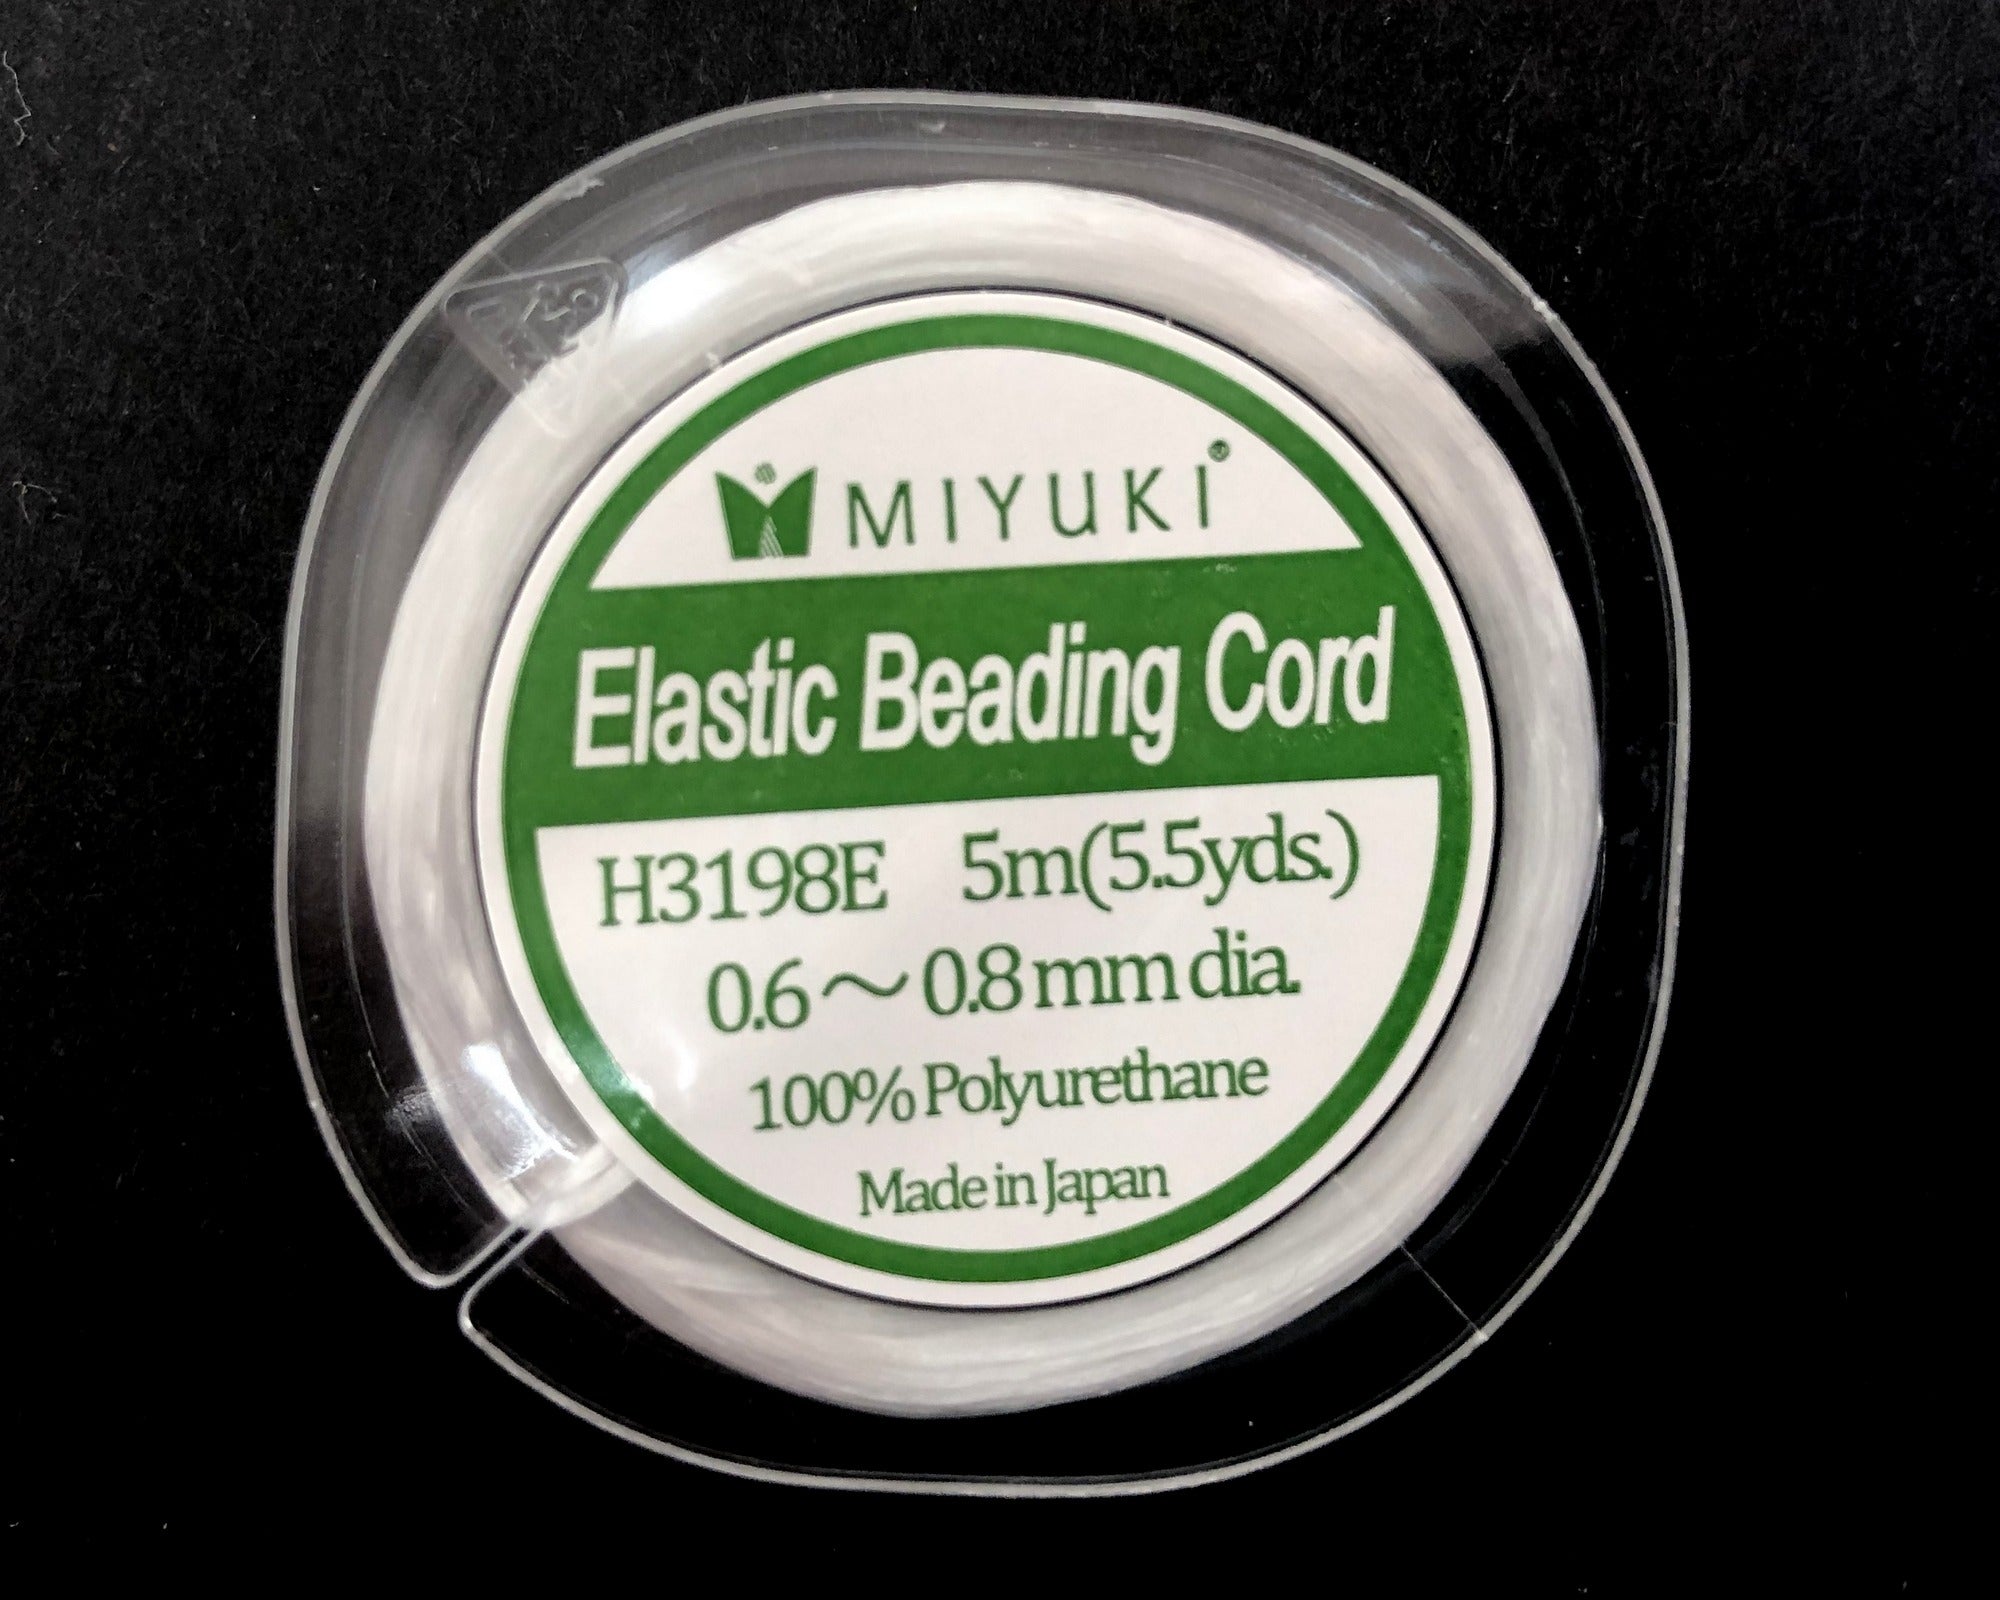 Miyuki elastic beading cord 0.6-0.8mm 5 meter spool